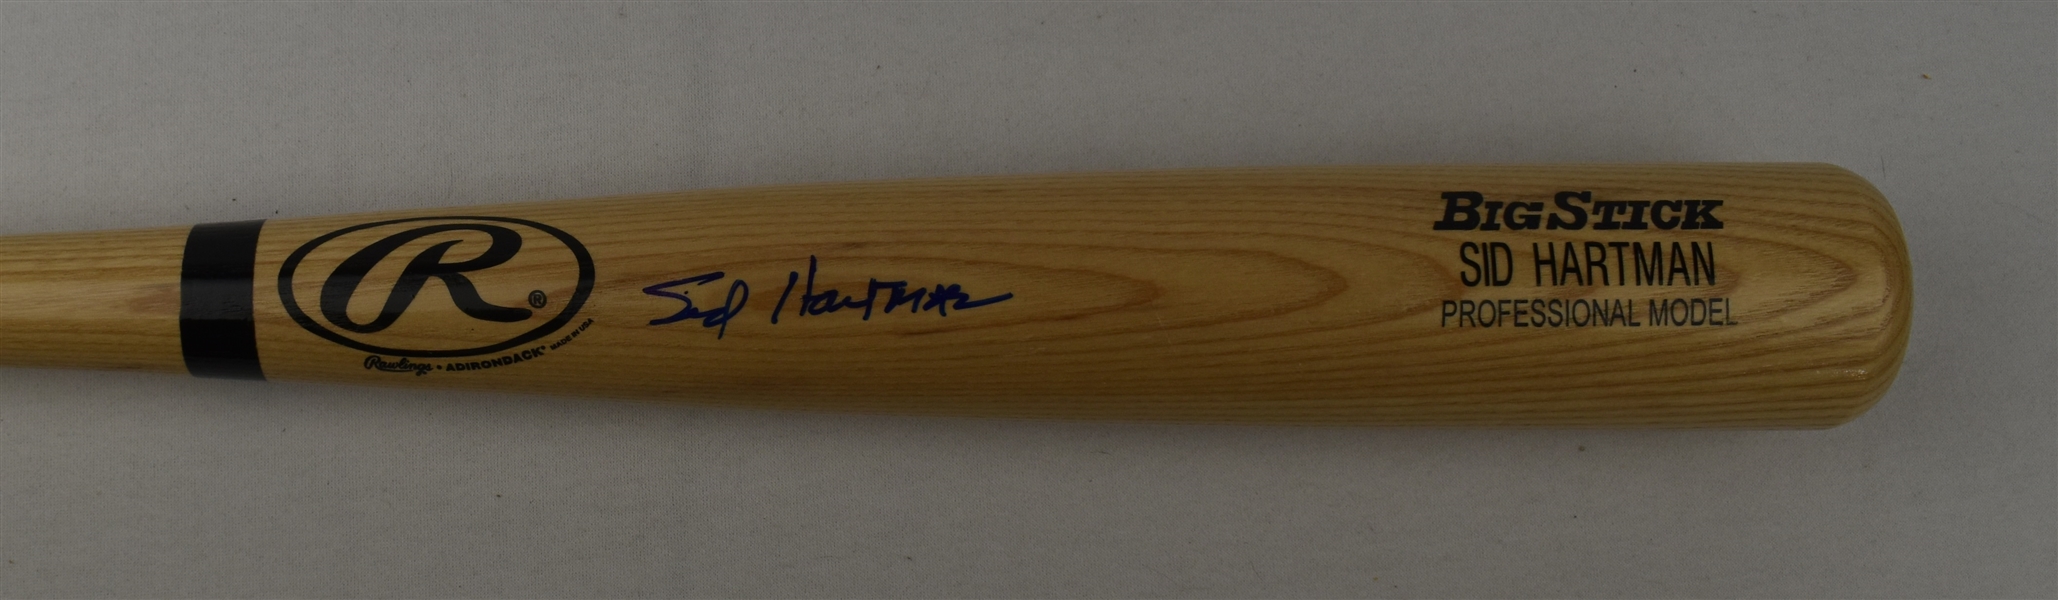 Sid Hartman Autographed Bat